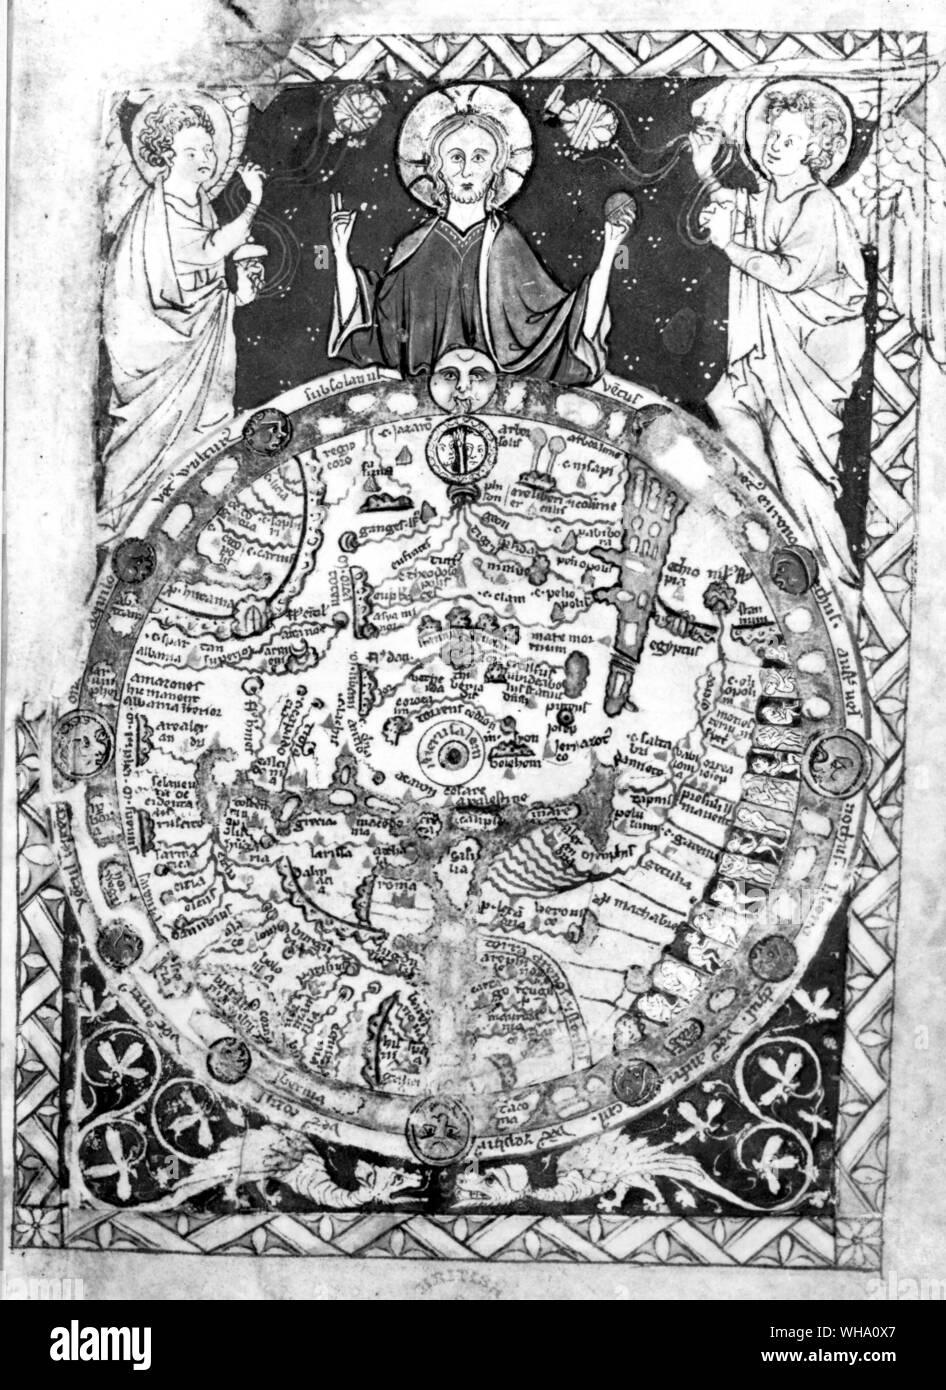 Un mapa del siglo xiii centradas en Jerusalén (impresas en color en el libro) Foto de stock